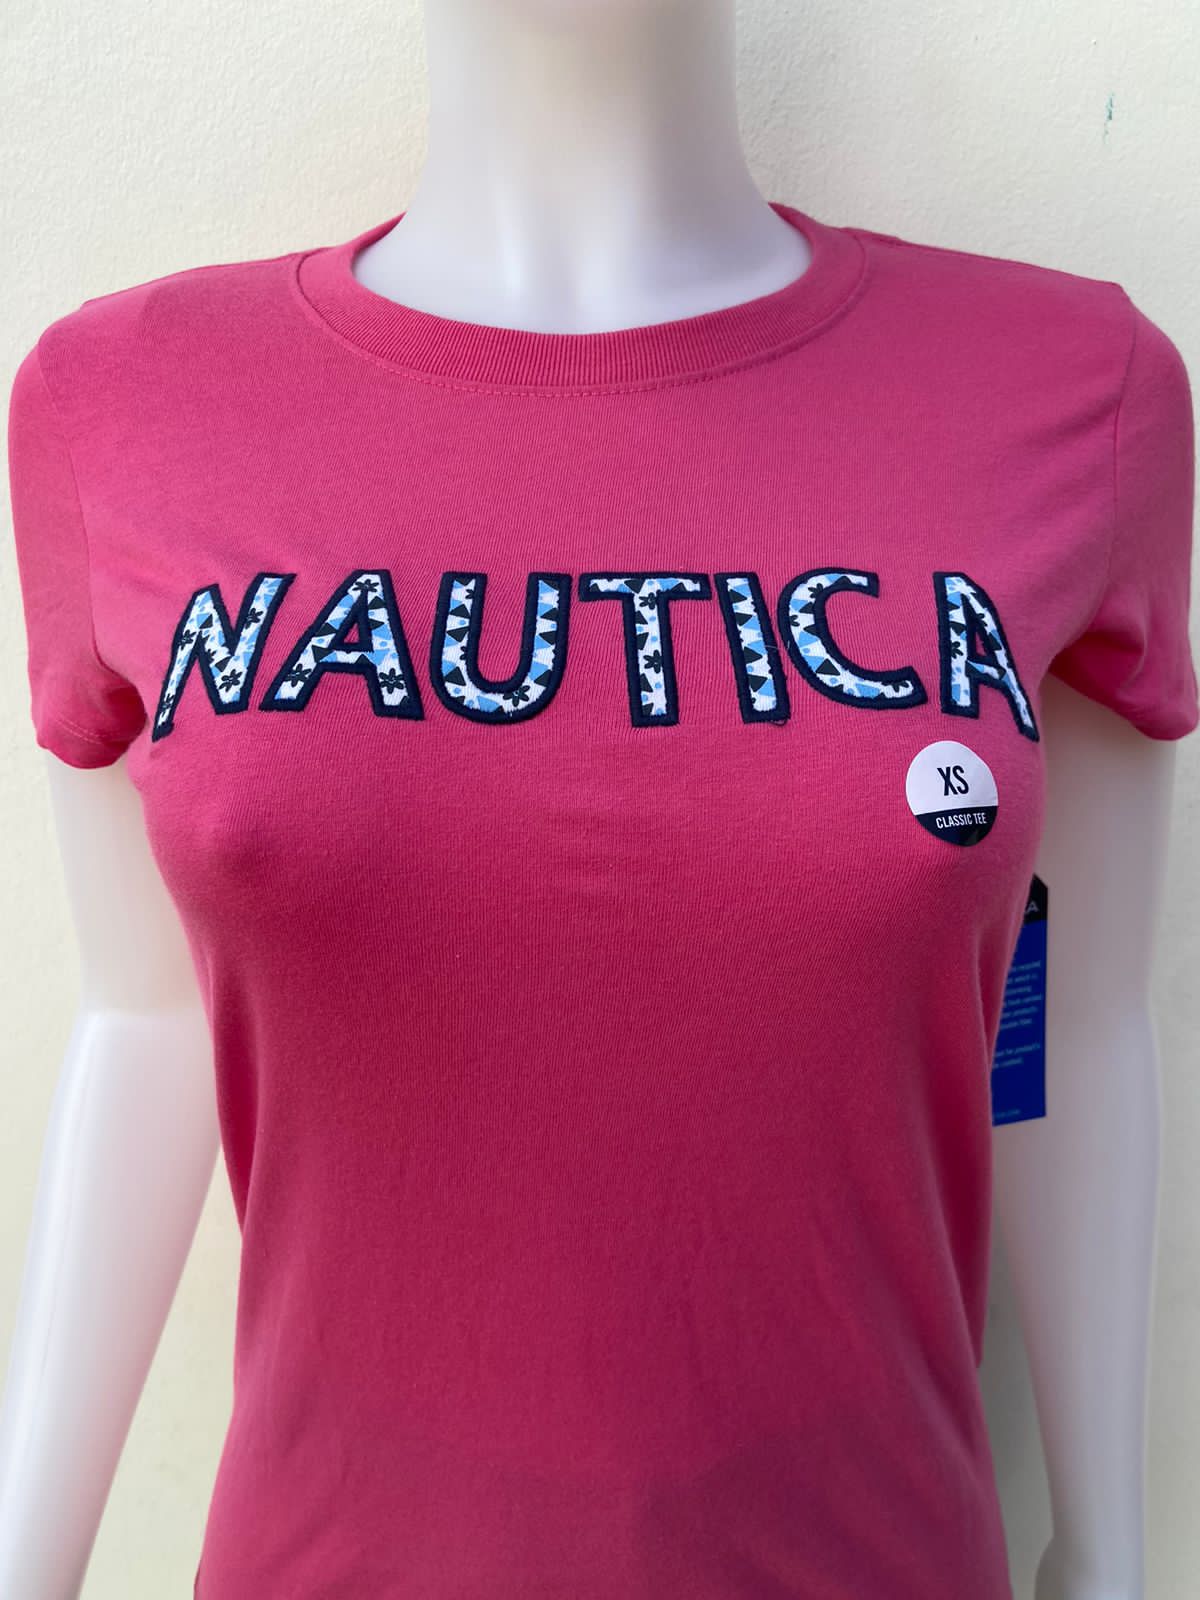 T-shirt Nautica rosado, con letras NÁUTICA en color blanco con diseño negro y azul.